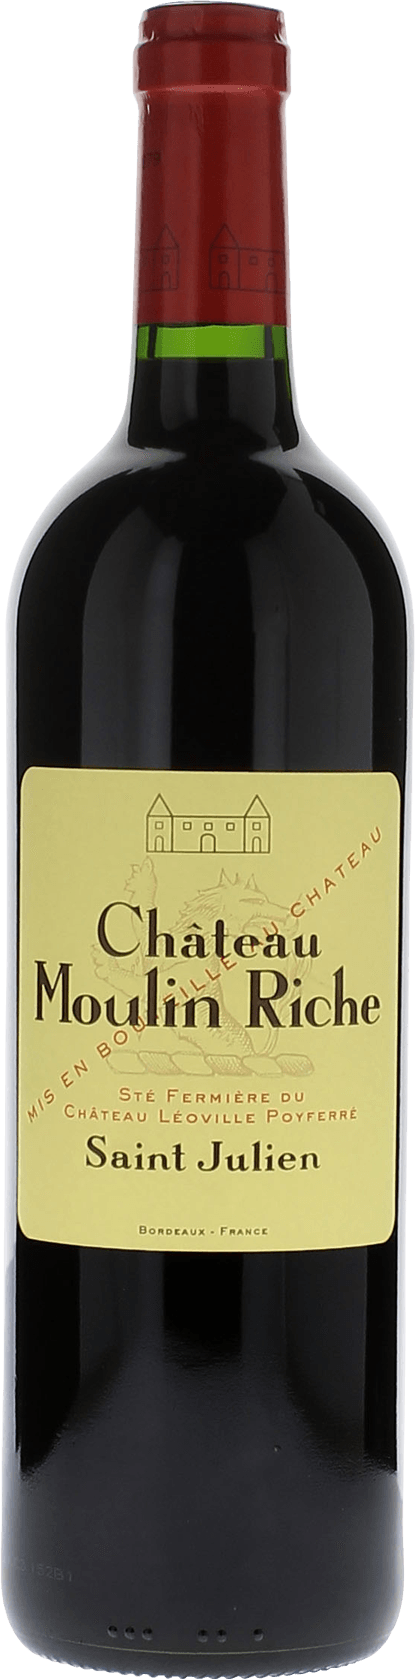 Moulin riche 2002  Saint-Julien, Bordeaux rouge